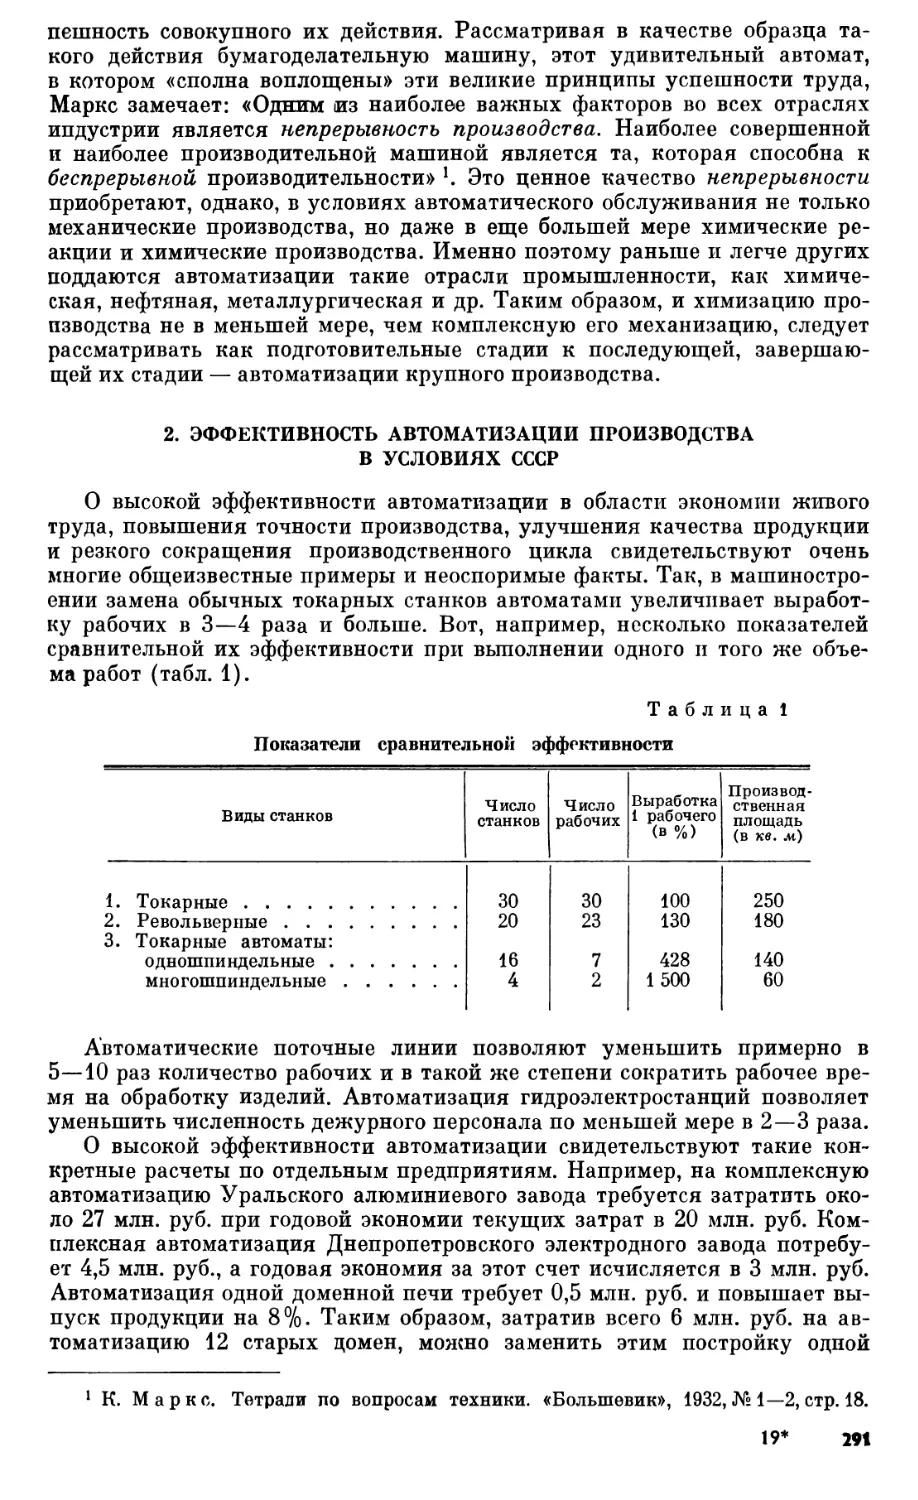 2. Эффективность автоматизации производства в условиях СССР